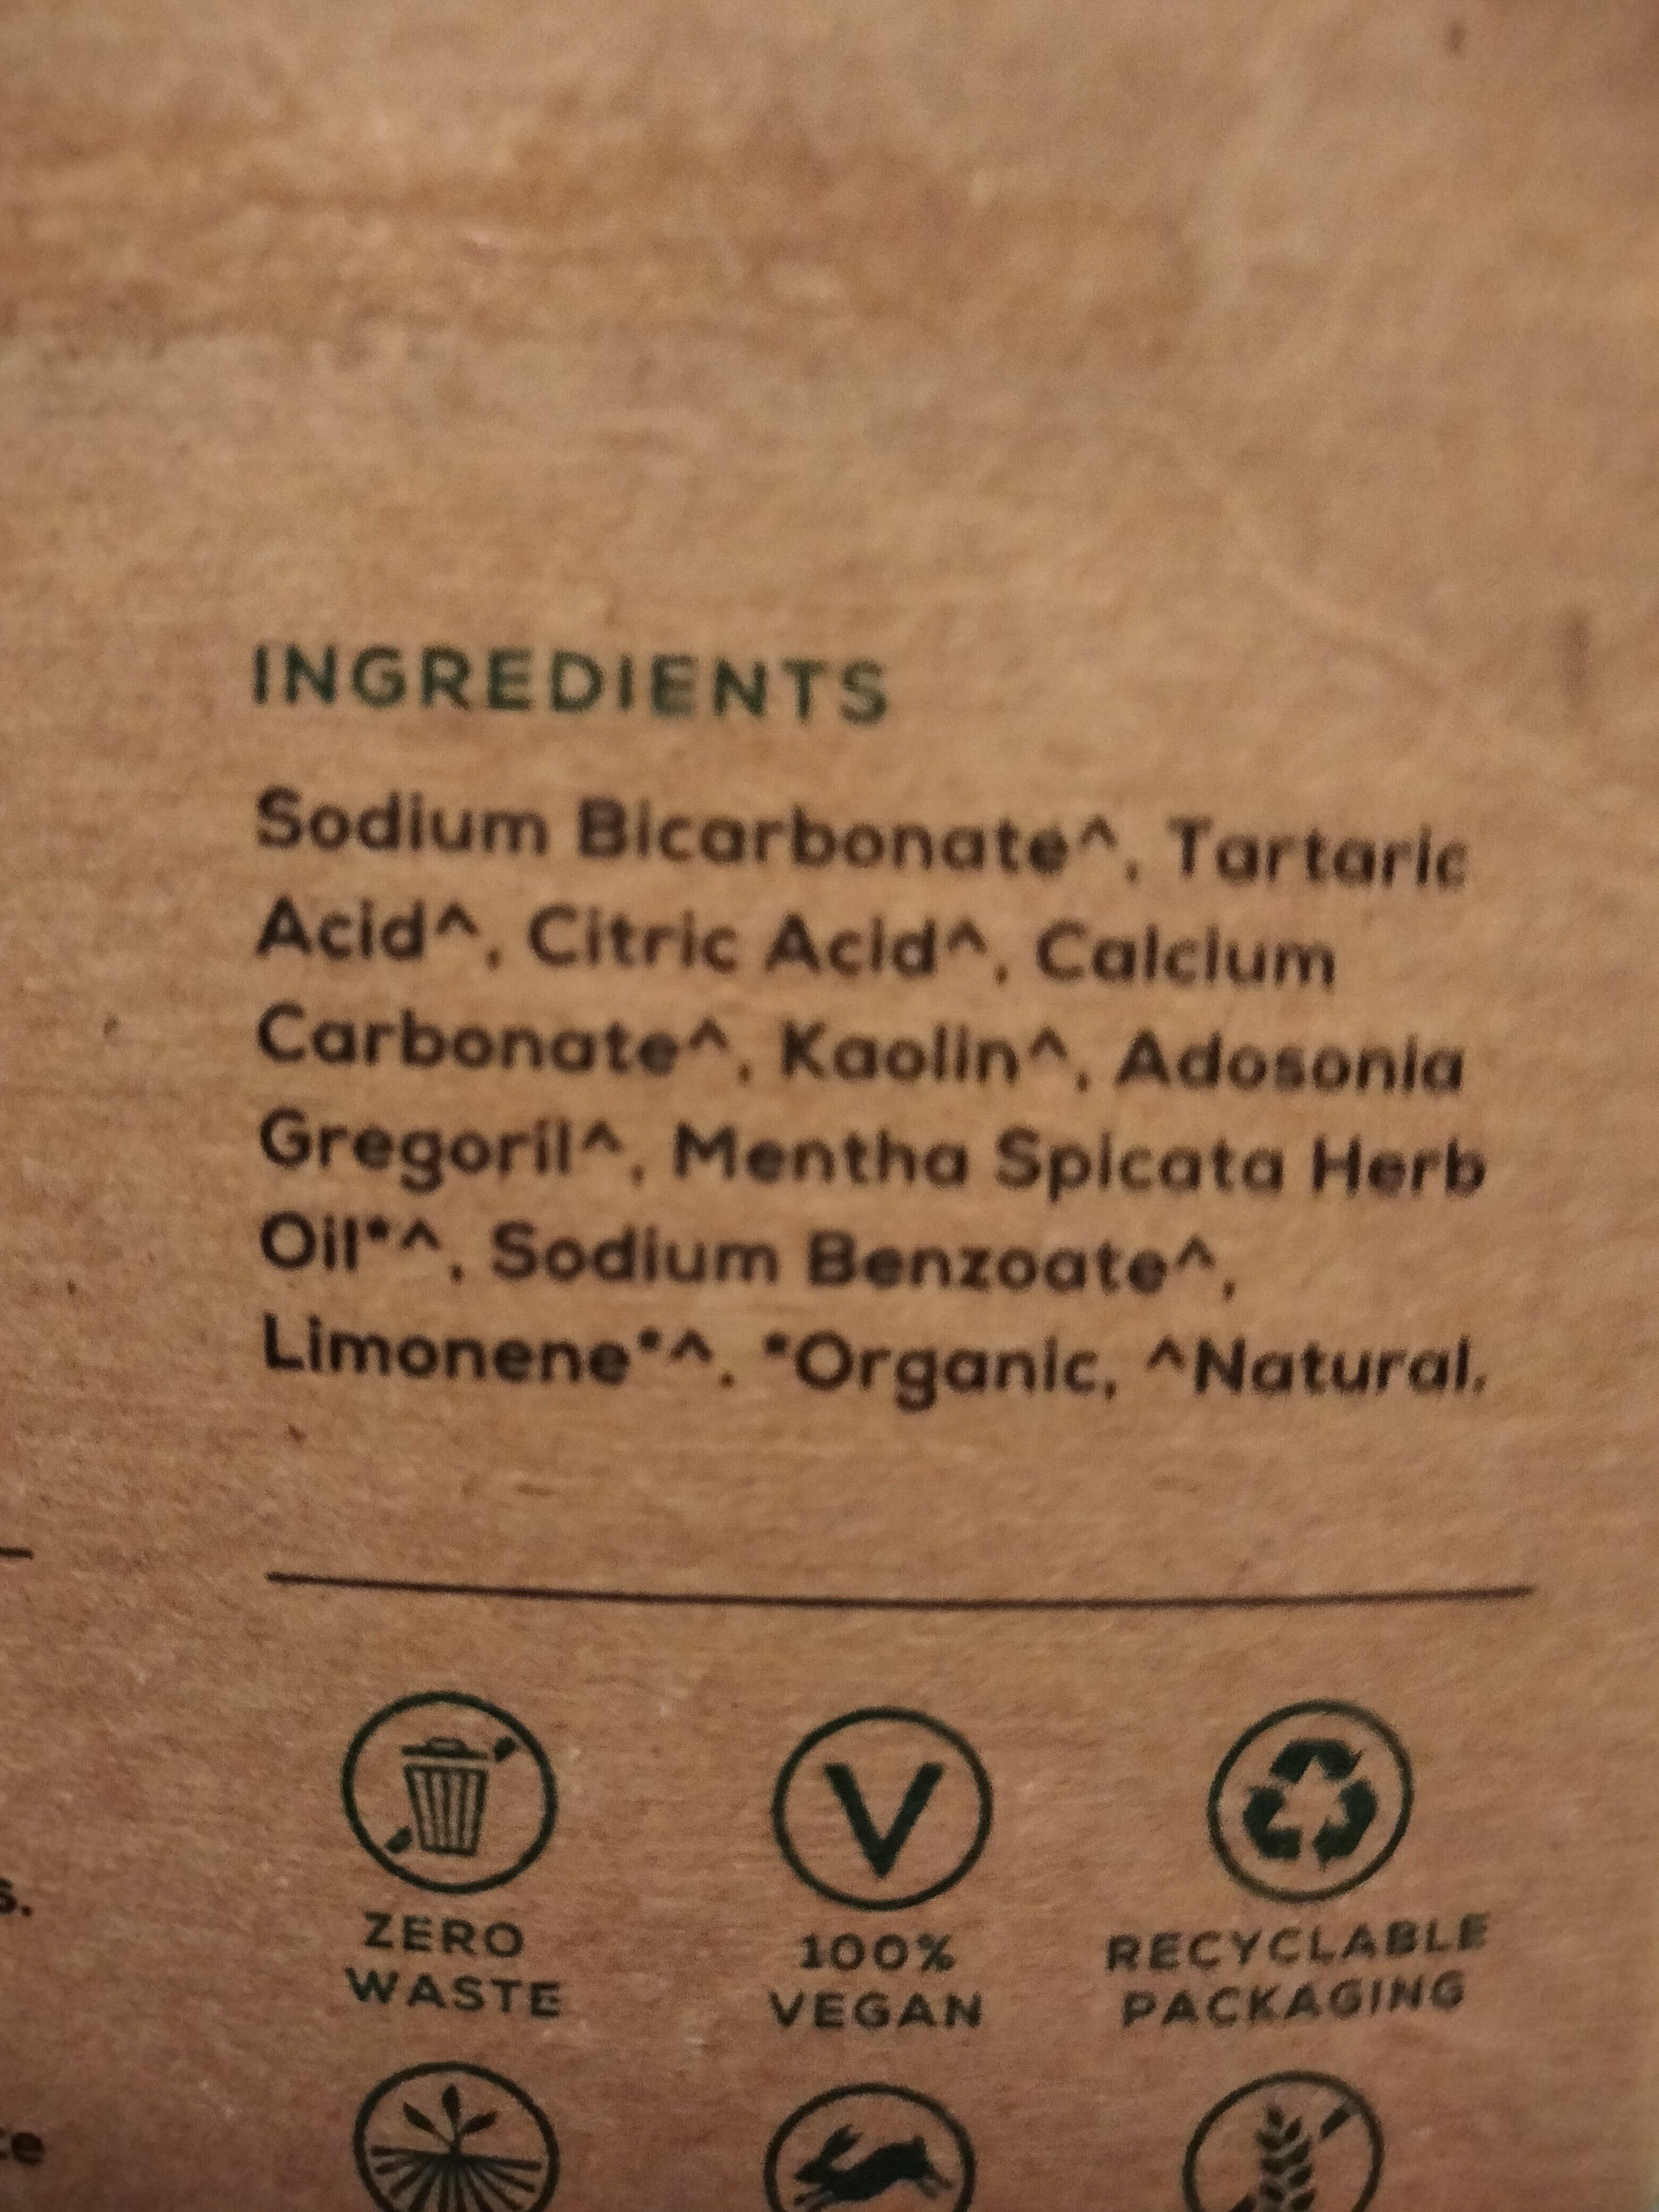 georganics toothpaste tablets - Ingredients - en